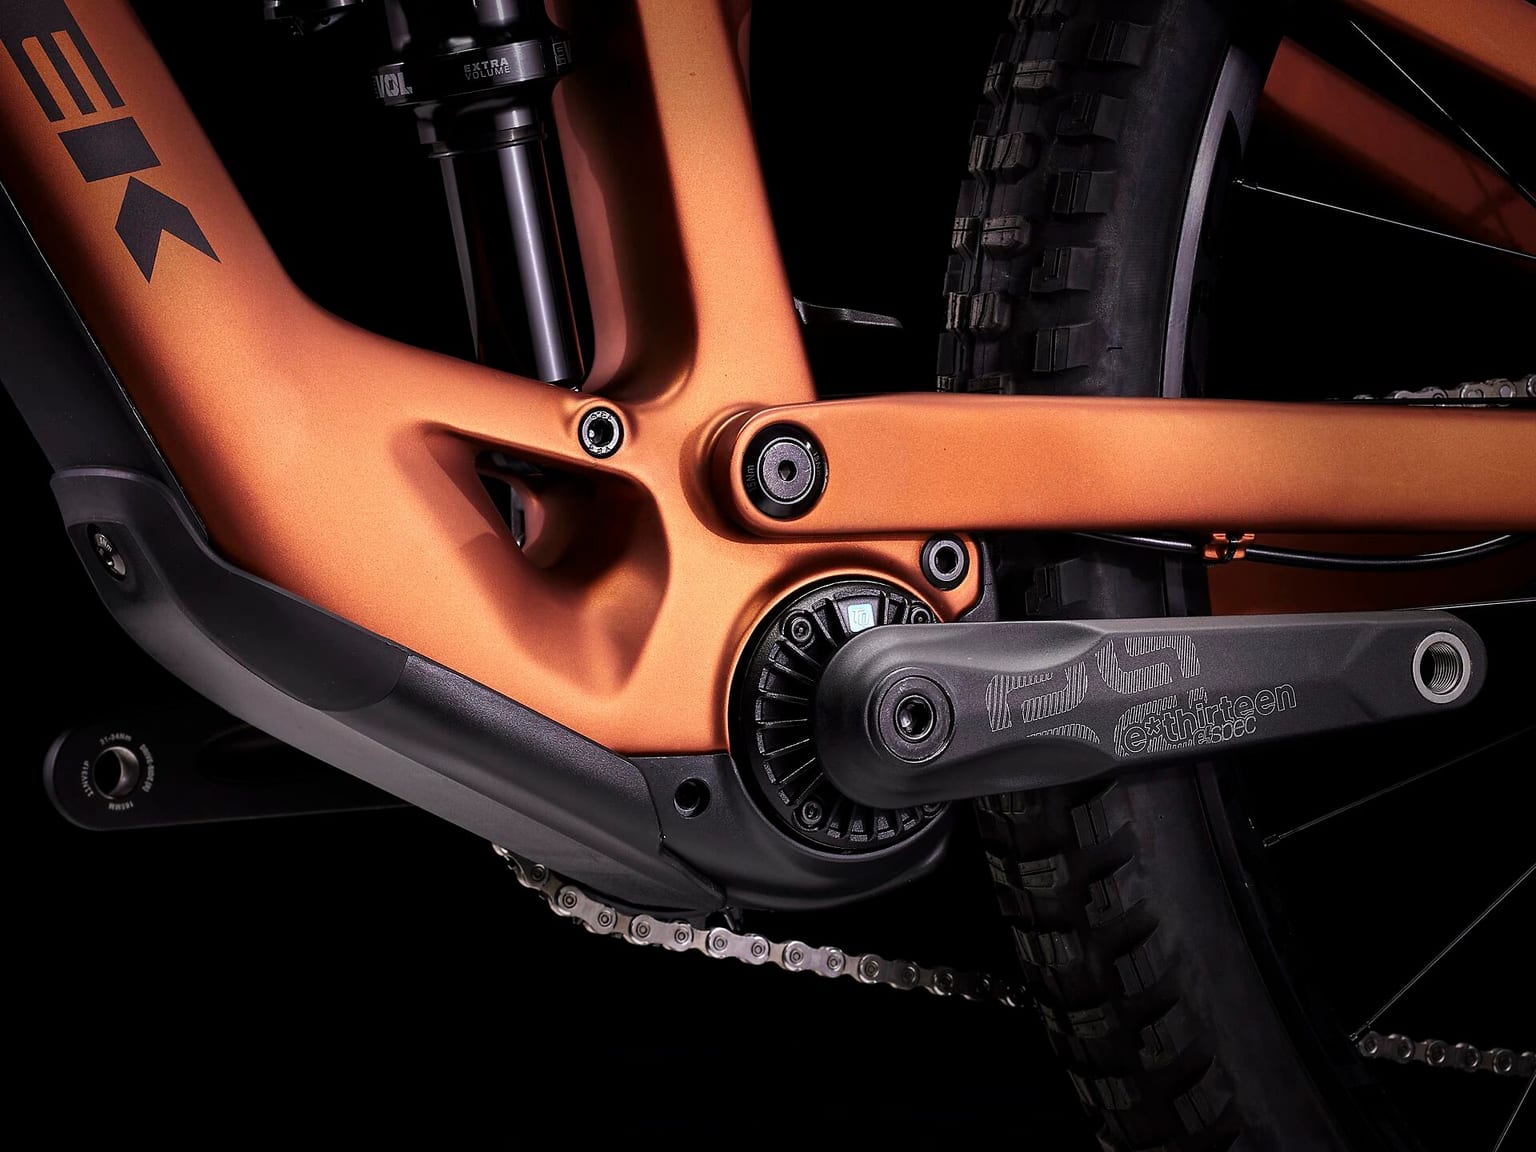 Trek Trek Fuel EXe 9.7 29 Mountain bike elettrica (Fully) arancio 3